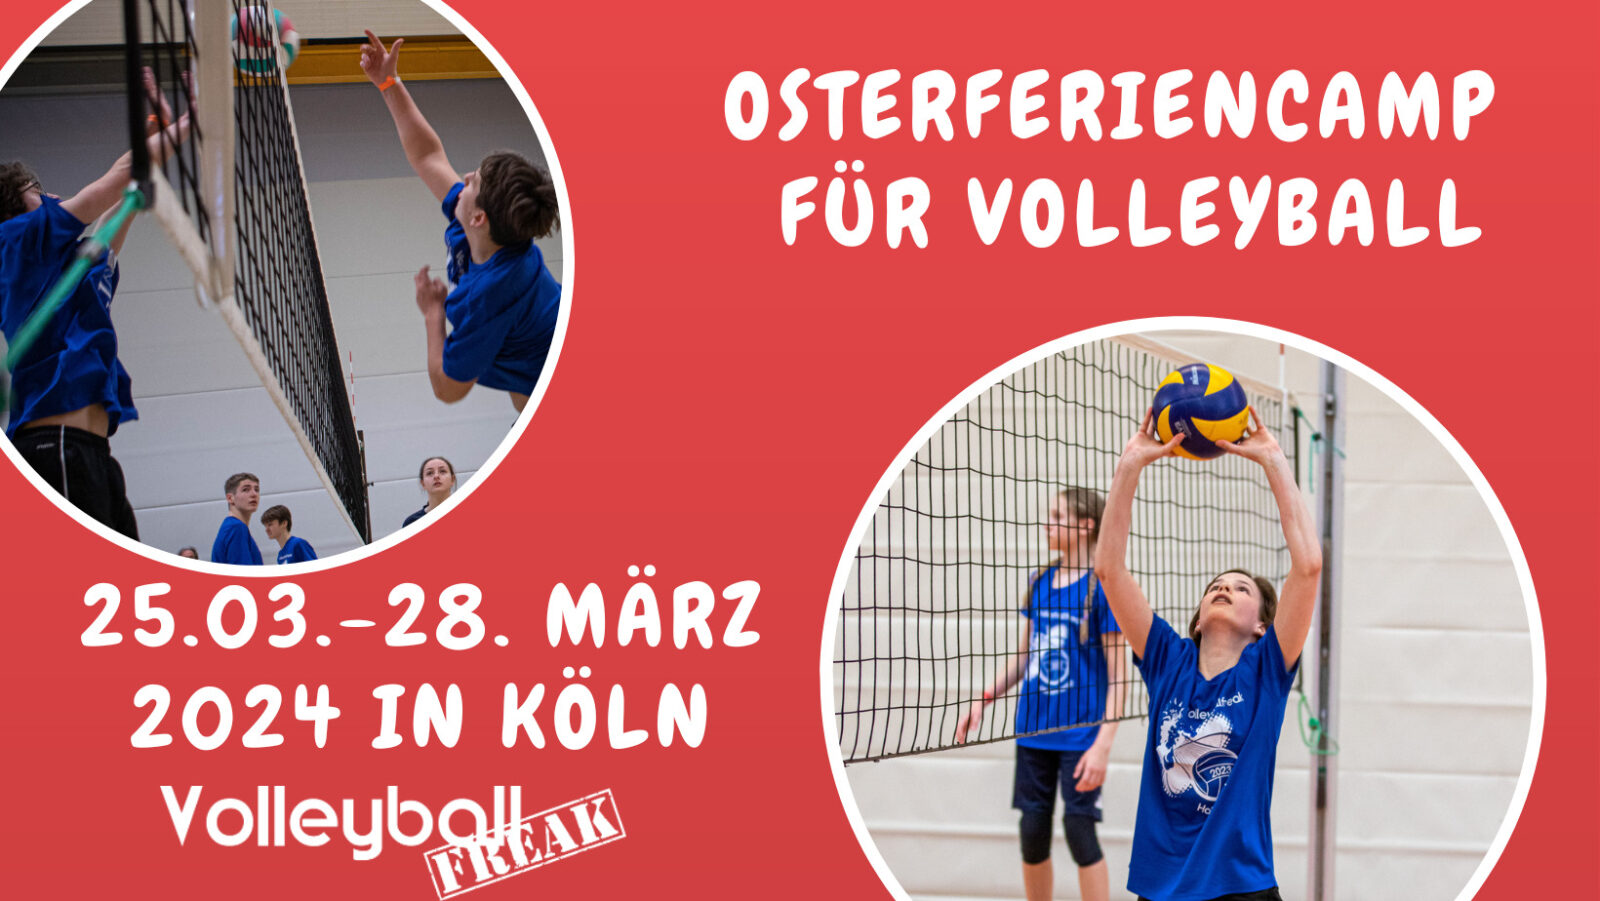 Osterferiencamp für Volleyball 25.-28.3.2024 in Köln